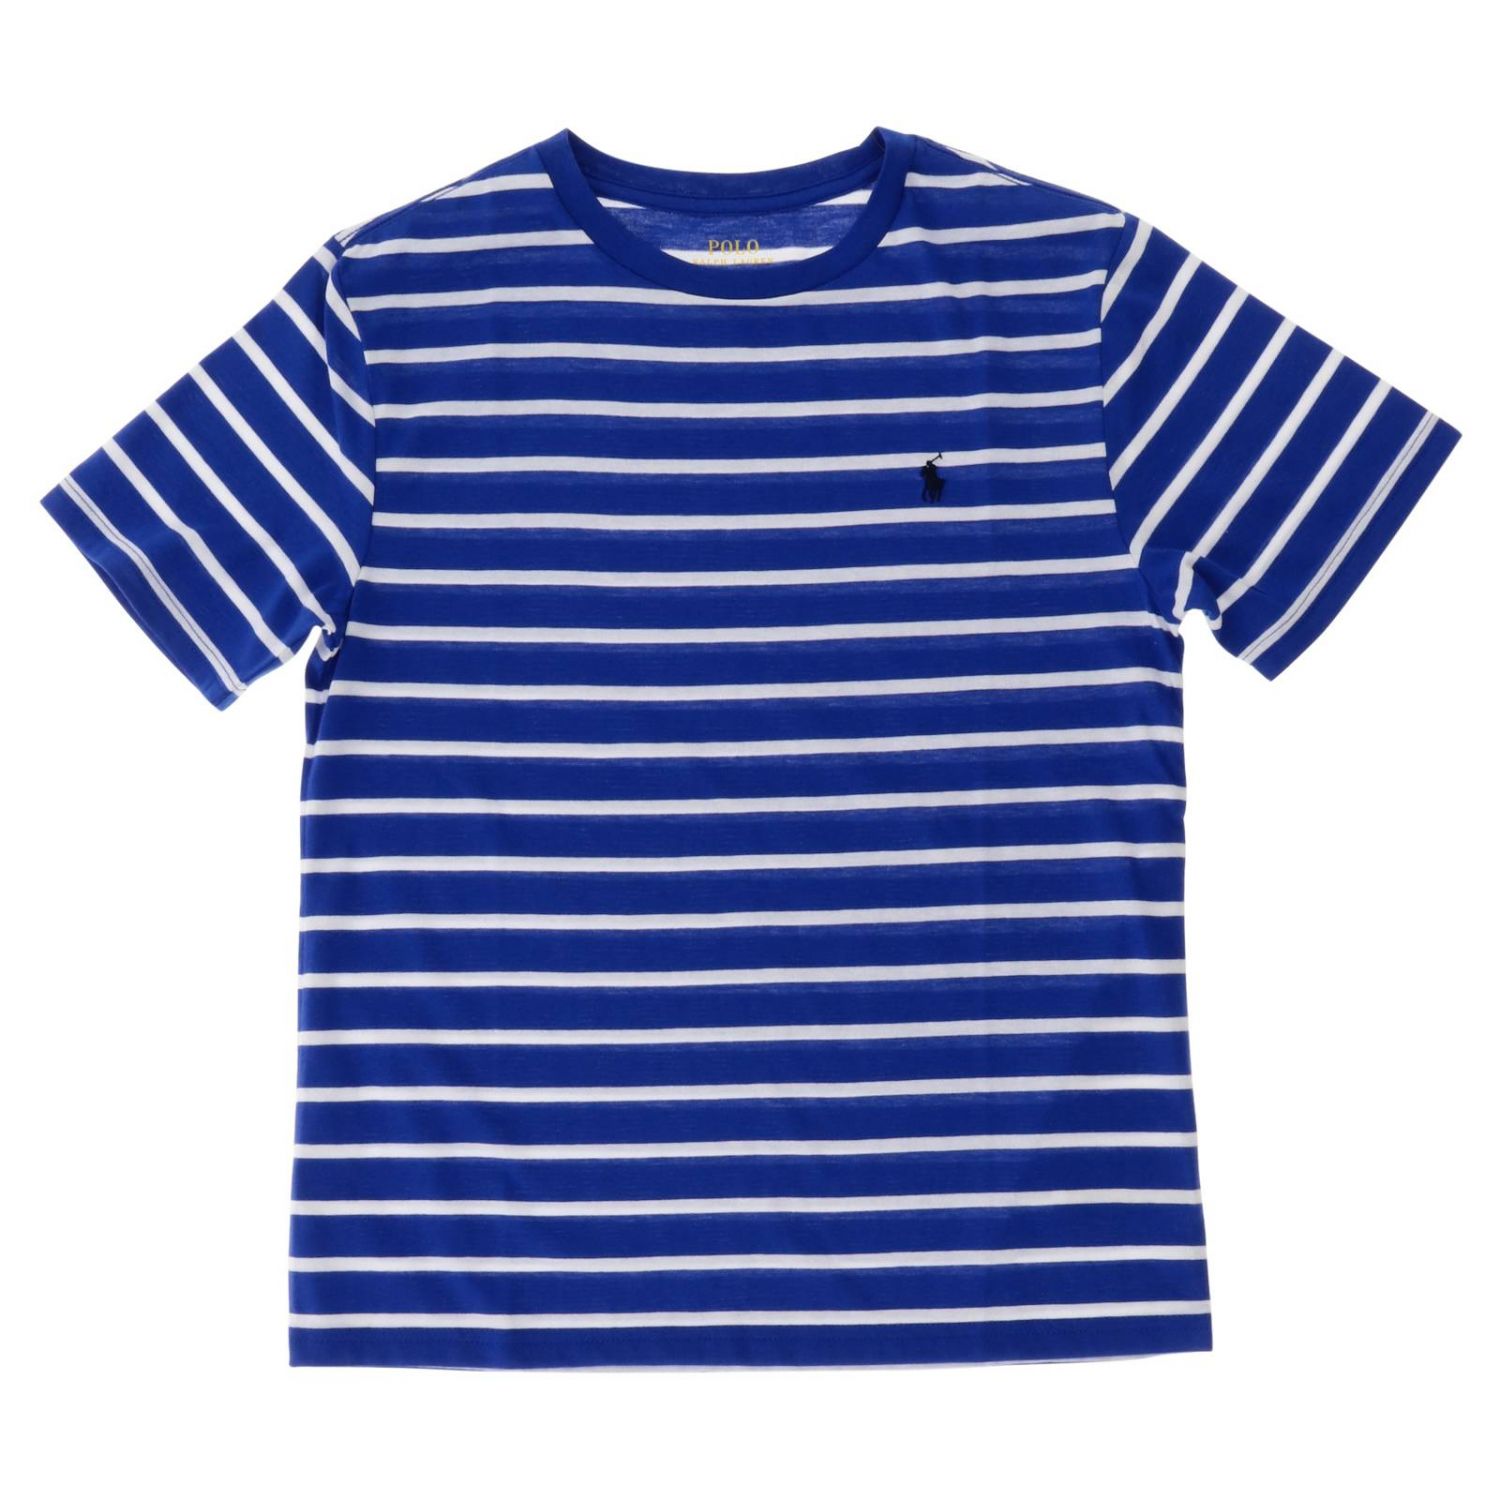 Polo Ralph Lauren Boy Outlet: t-shirt for boy - Blue | Polo Ralph ...